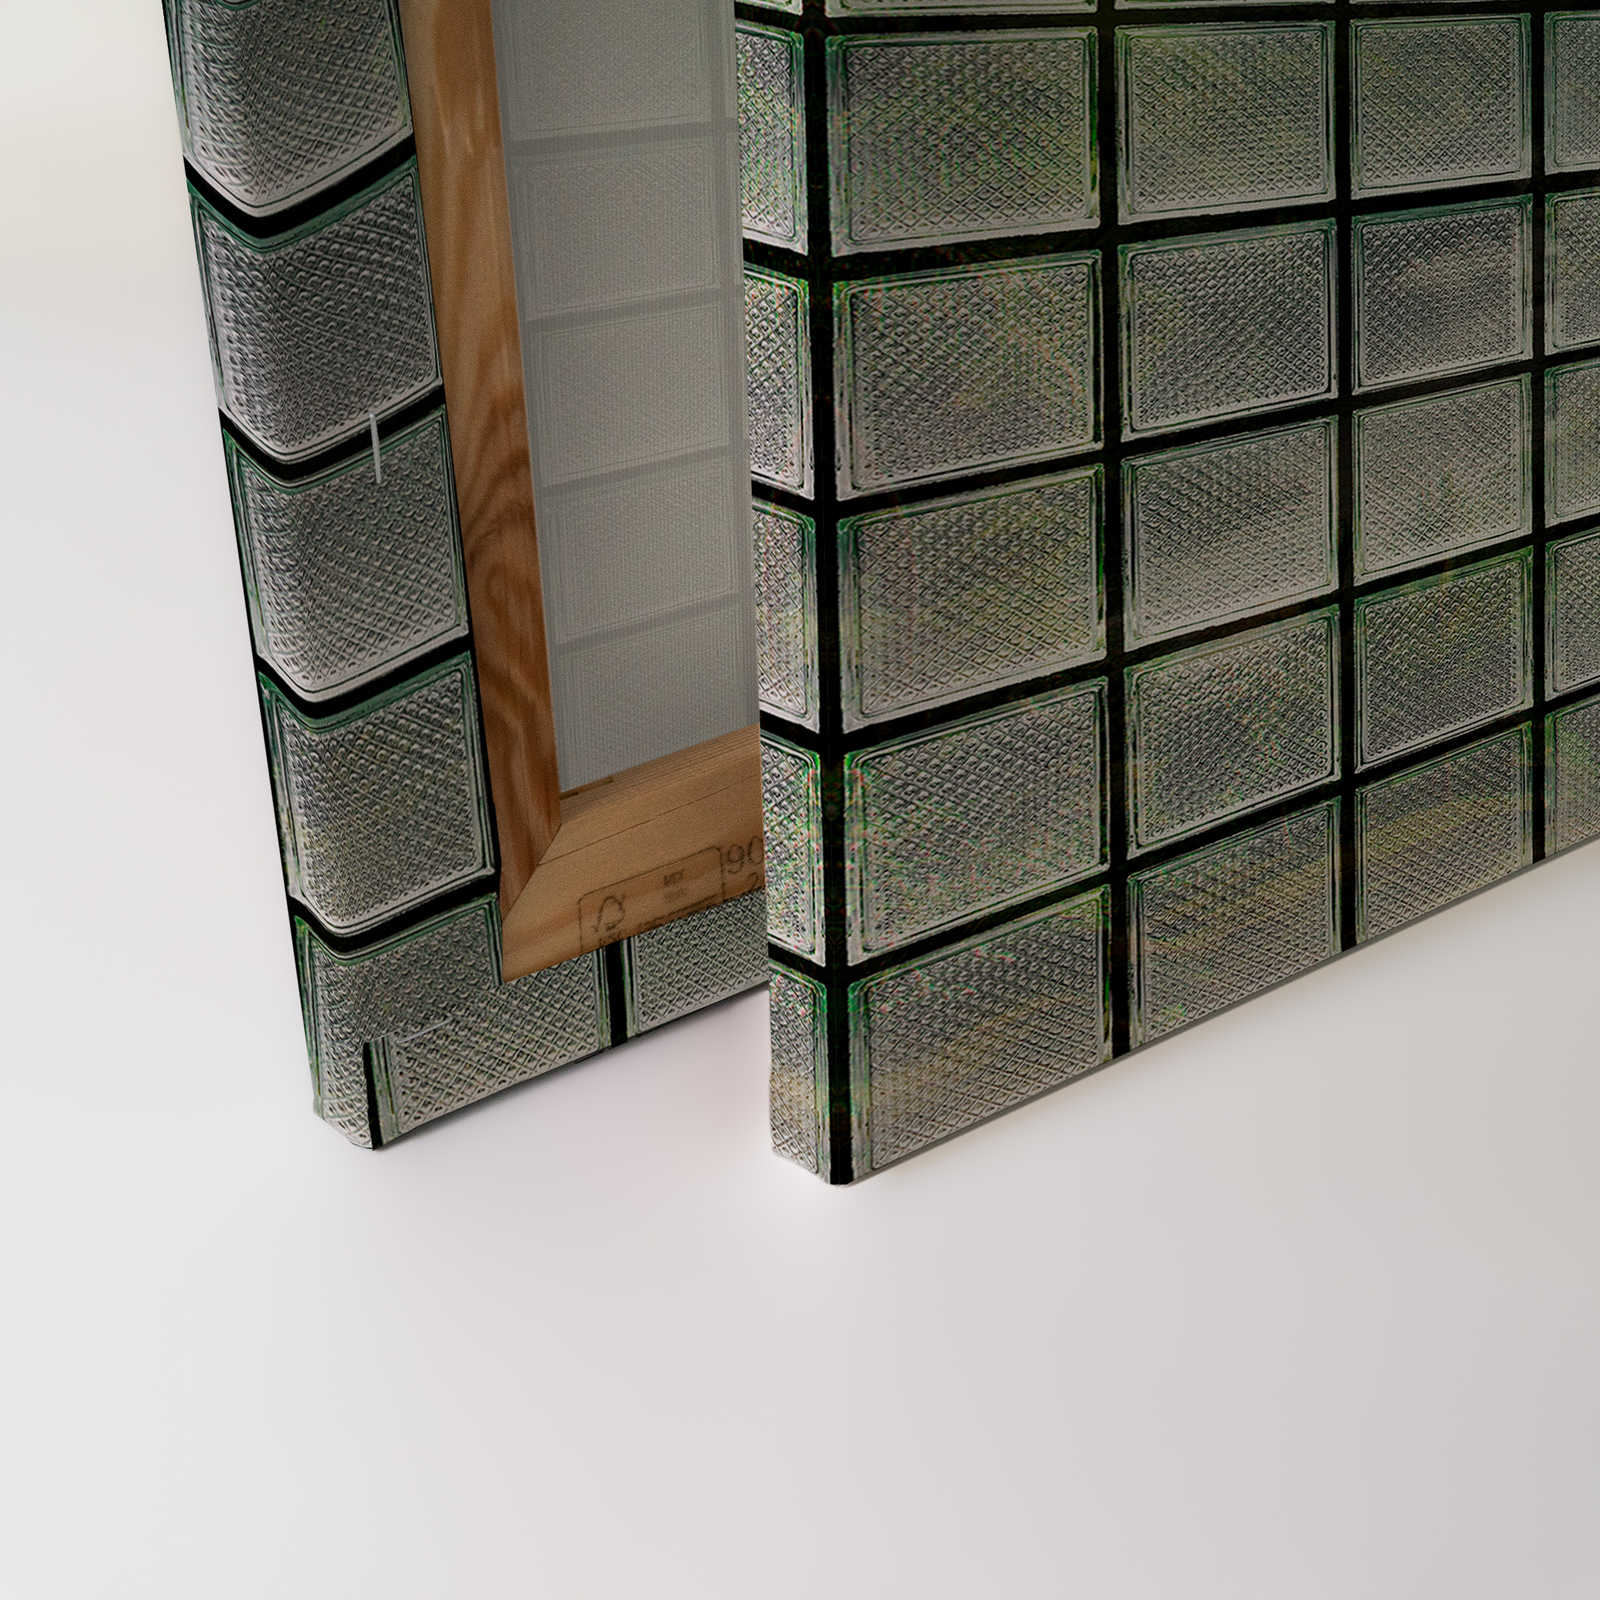             Green House 3 - Toile fenêtre briques de verre & forêt tropicale - 1,20 m x 0,80 m
        